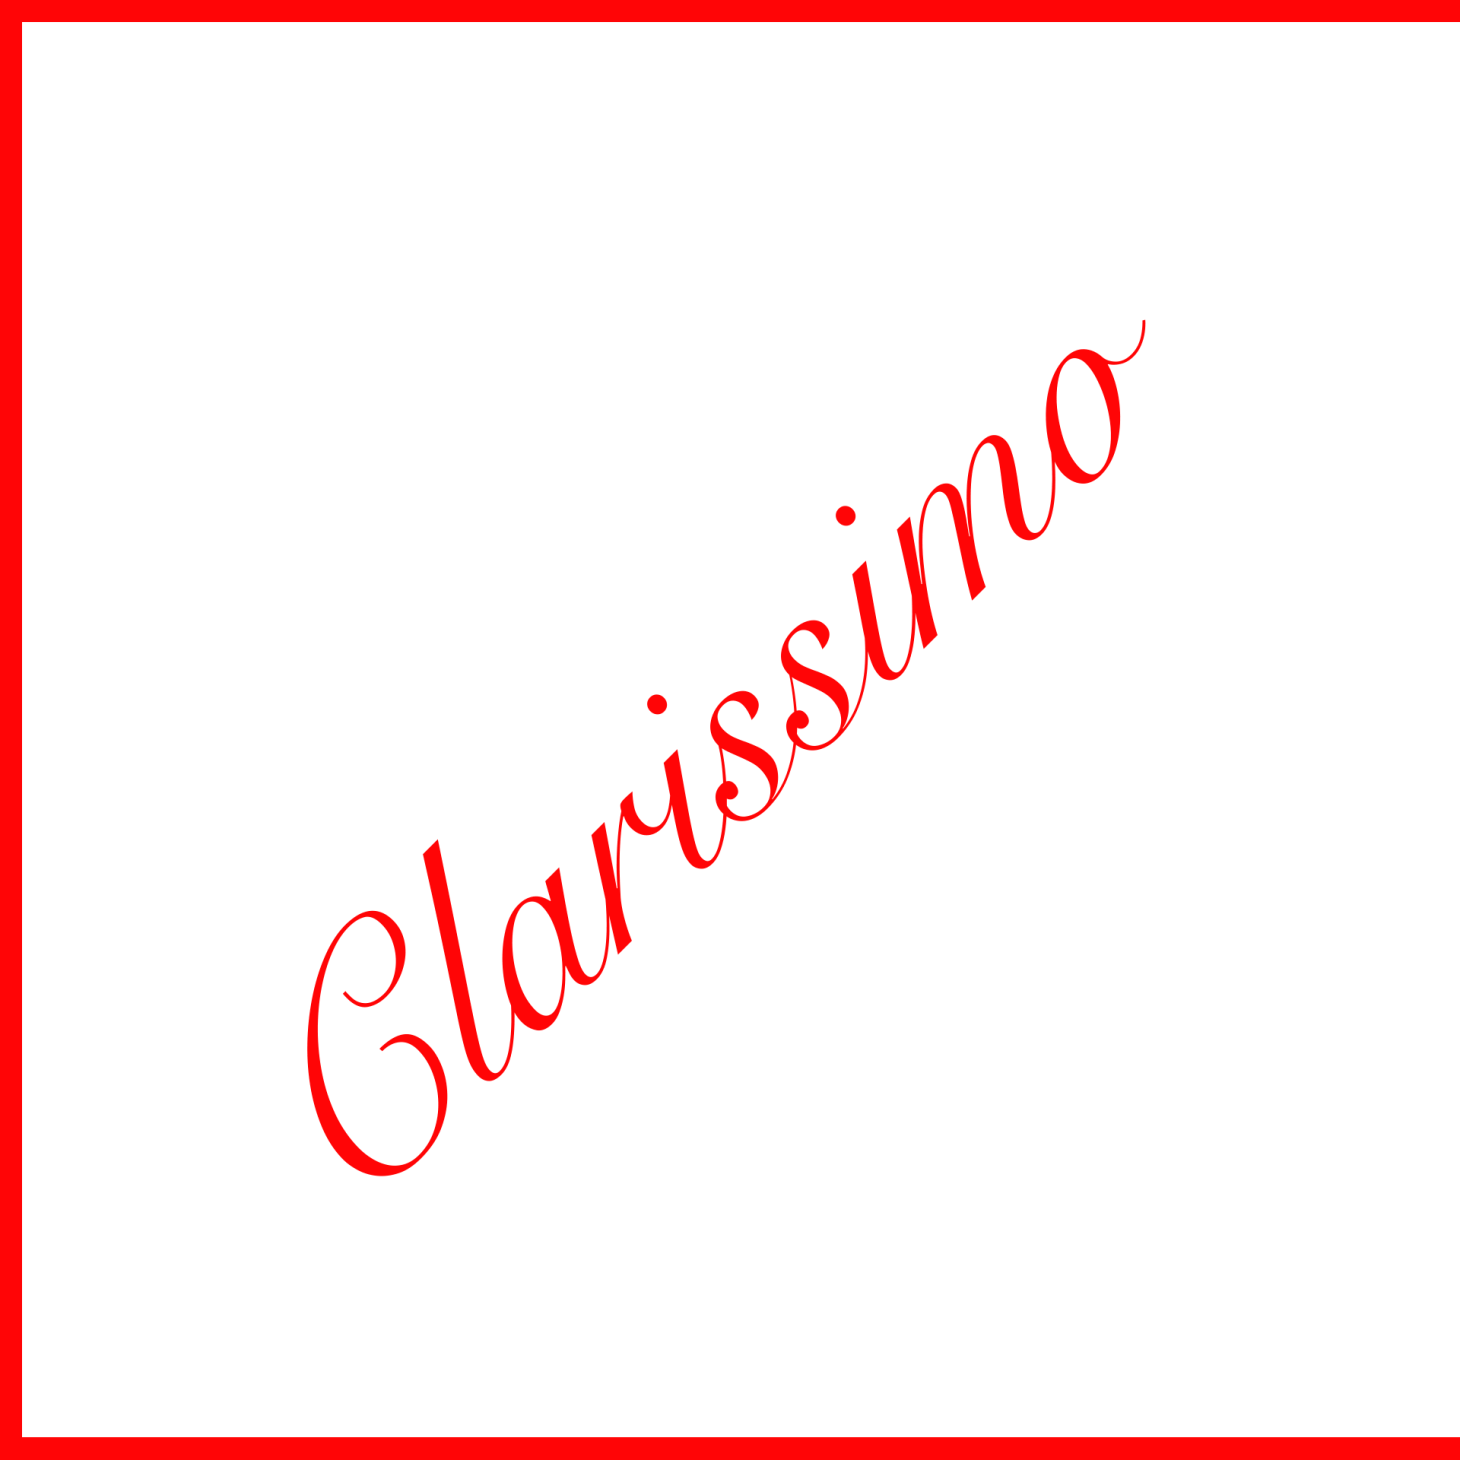 Clarissimo